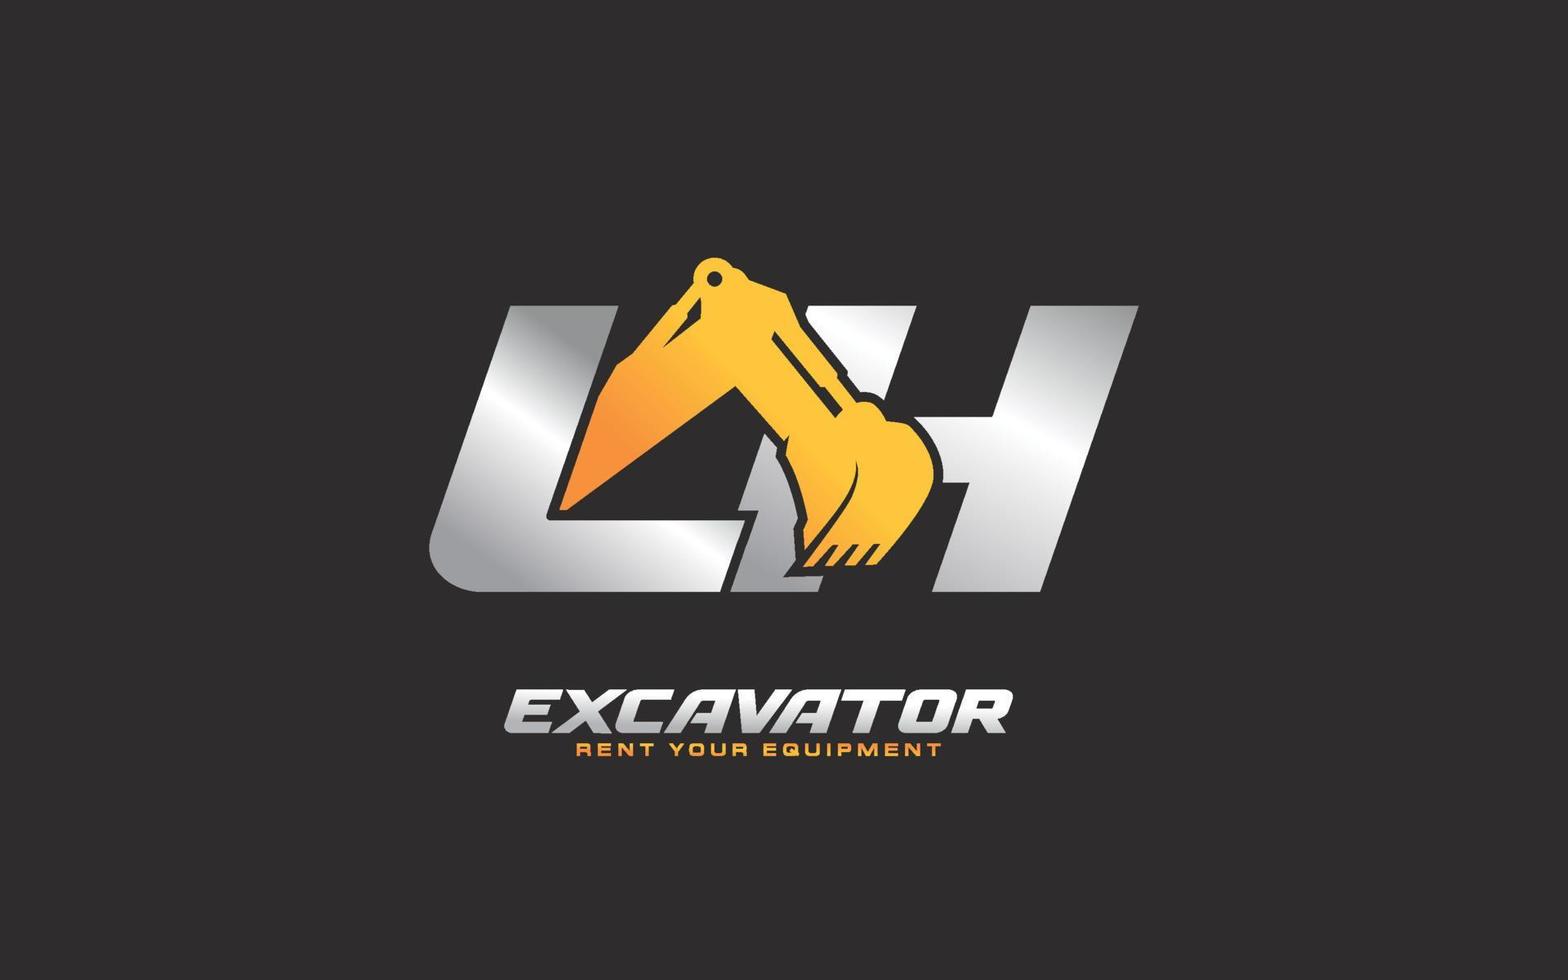 Excavadora de logotipo lh para empresa constructora. ilustración de vector de plantilla de equipo pesado para su marca.